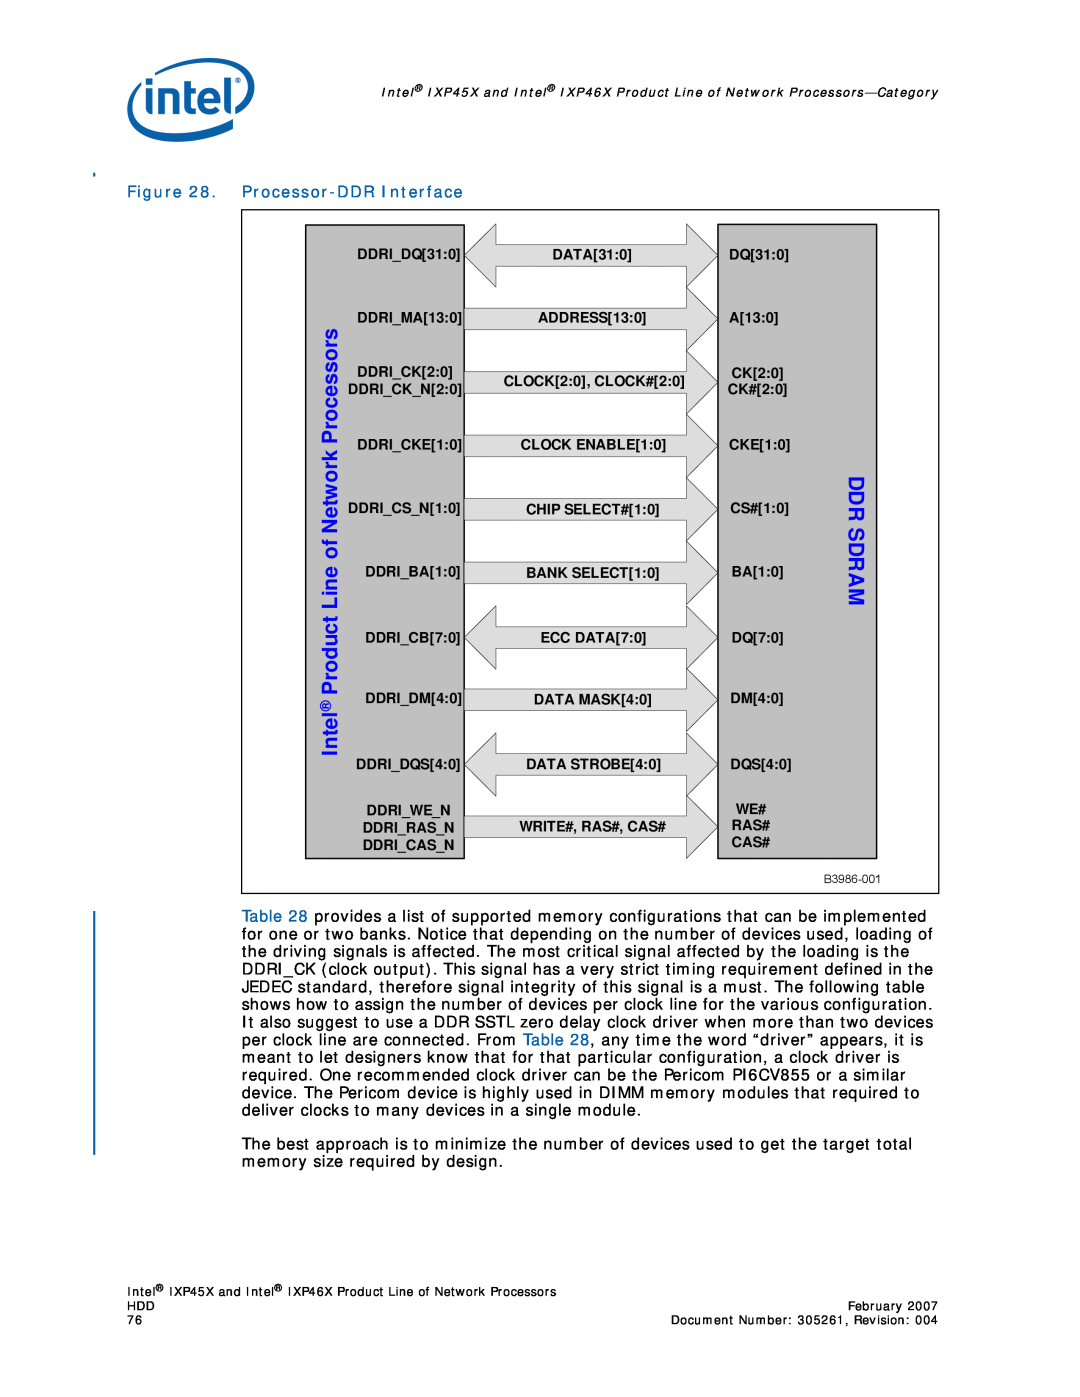 Intel IXP46X, IXP45X manual Processor-DDRInterface, Processors, Line of Network, Ddr Sdram, Product, Intel 